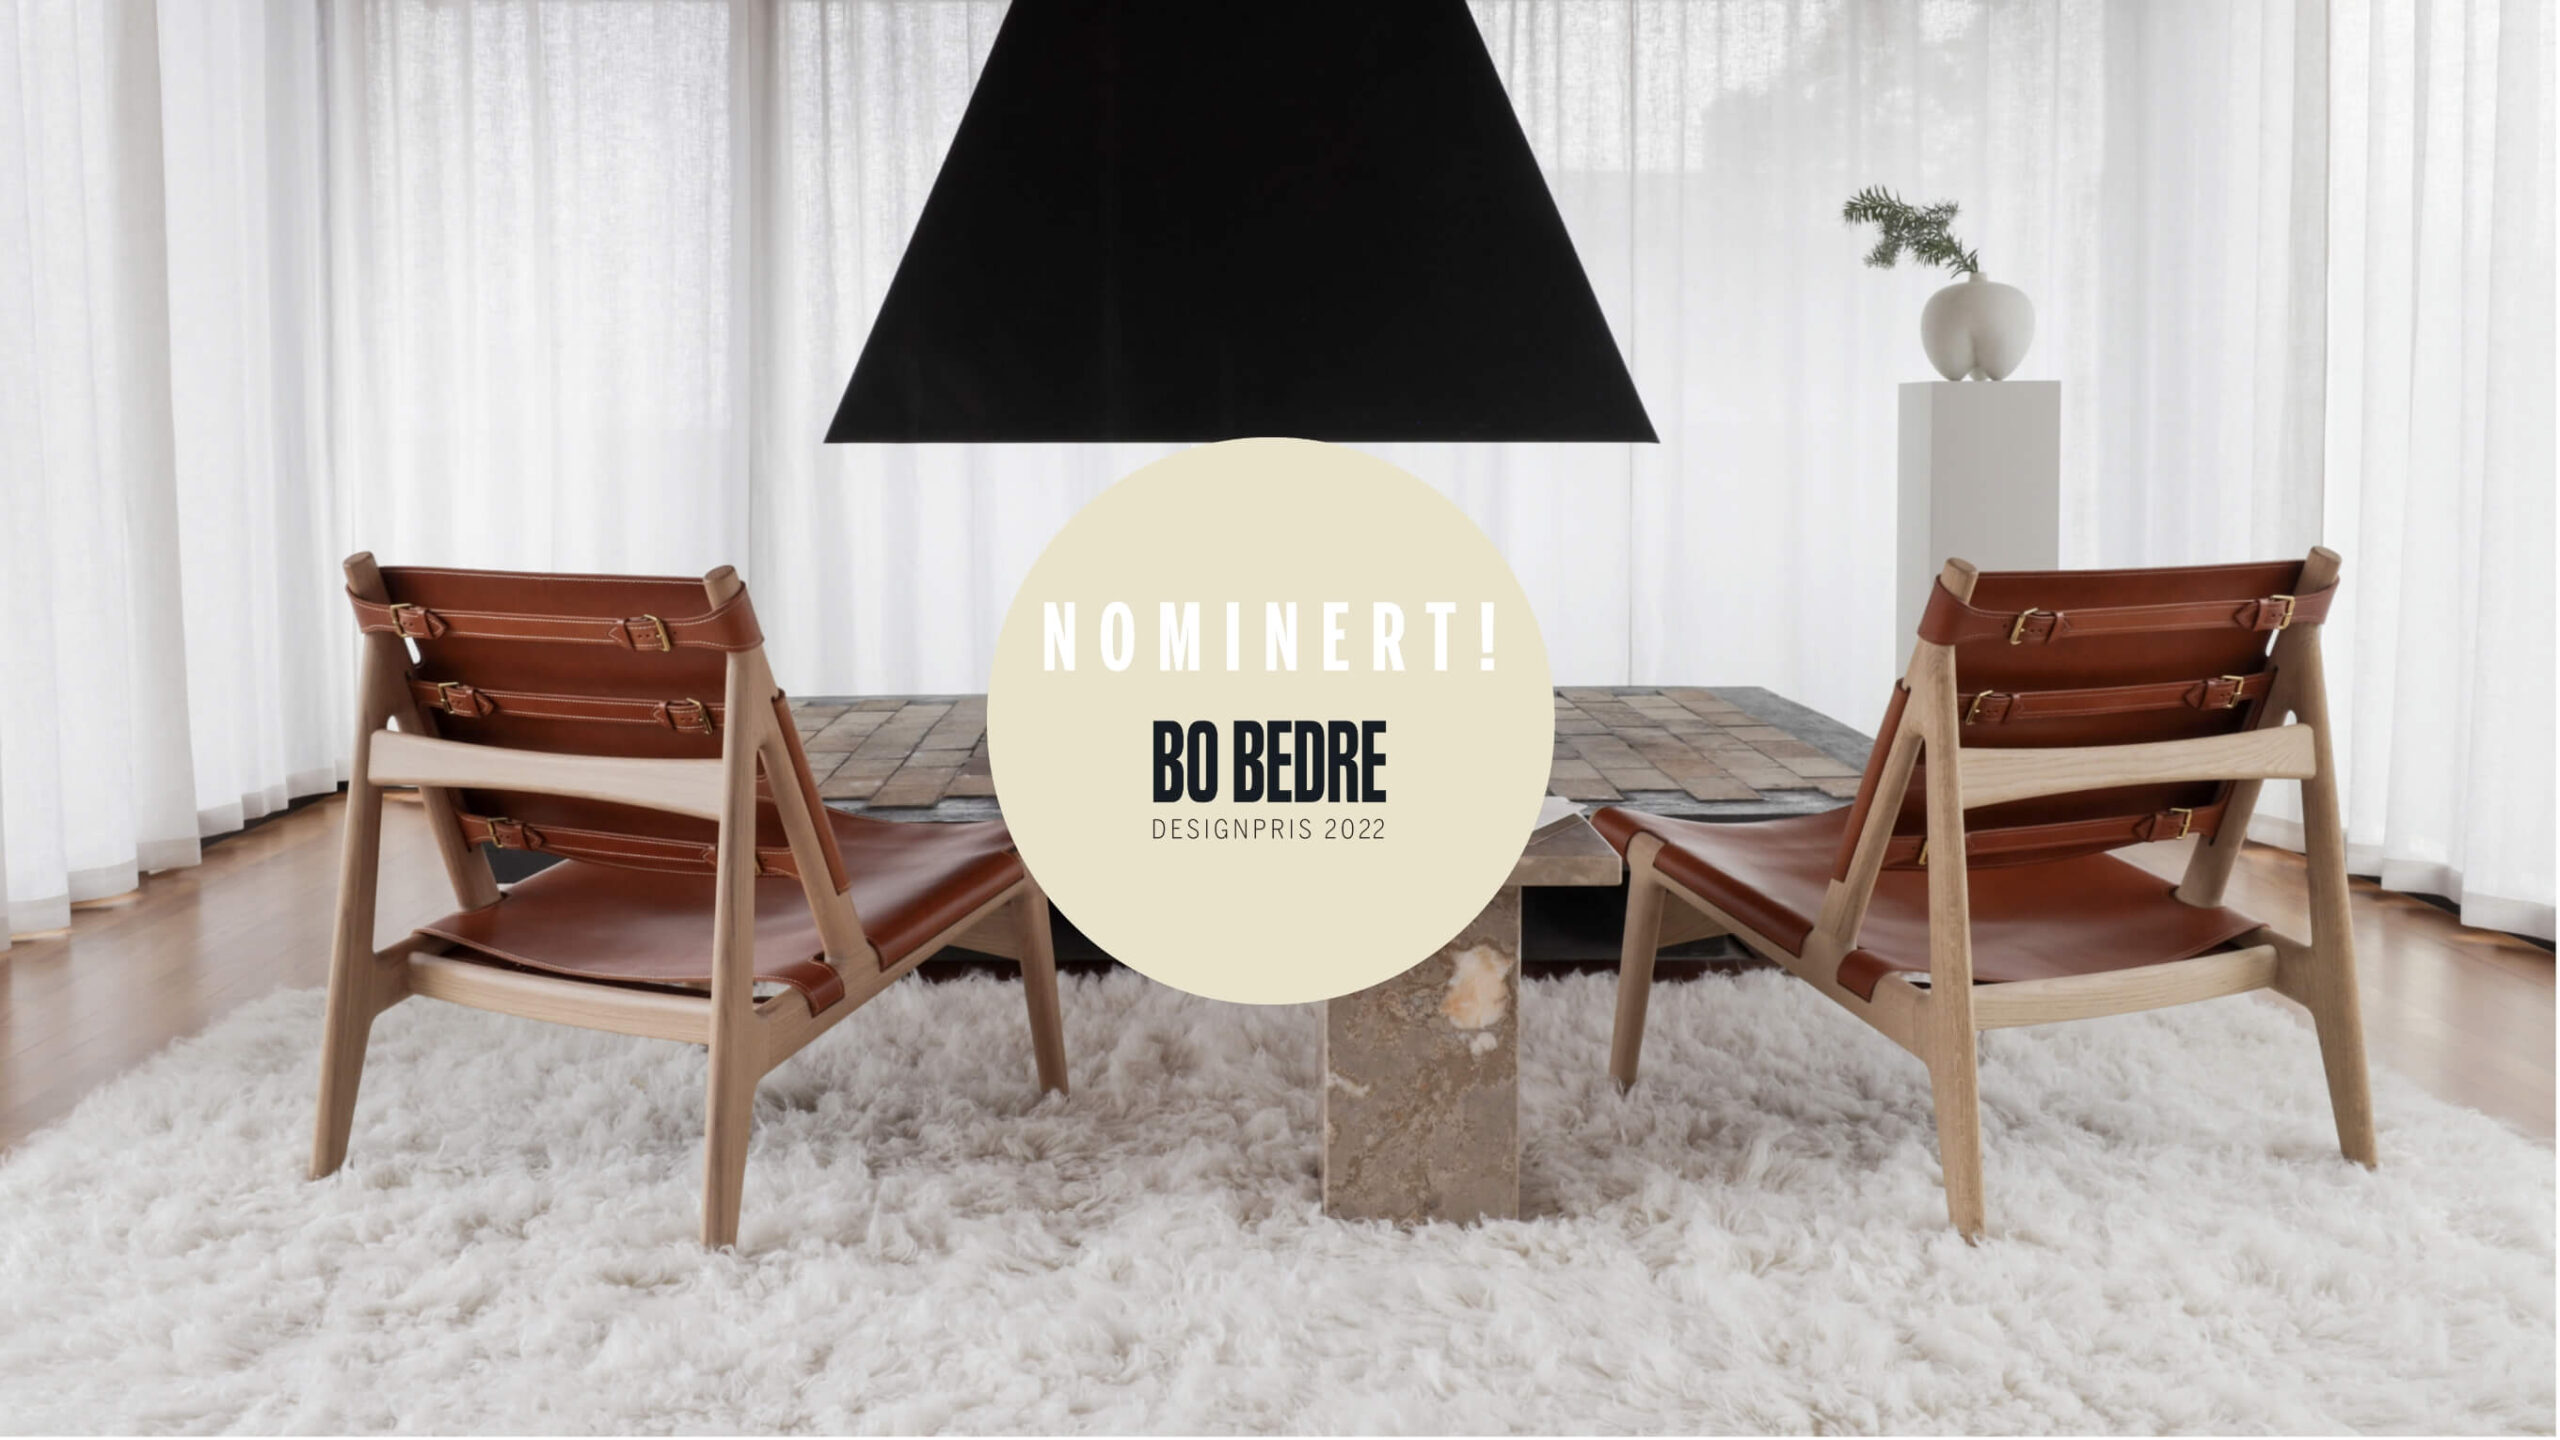 Hunter nominated for Bo Bedre’s design award